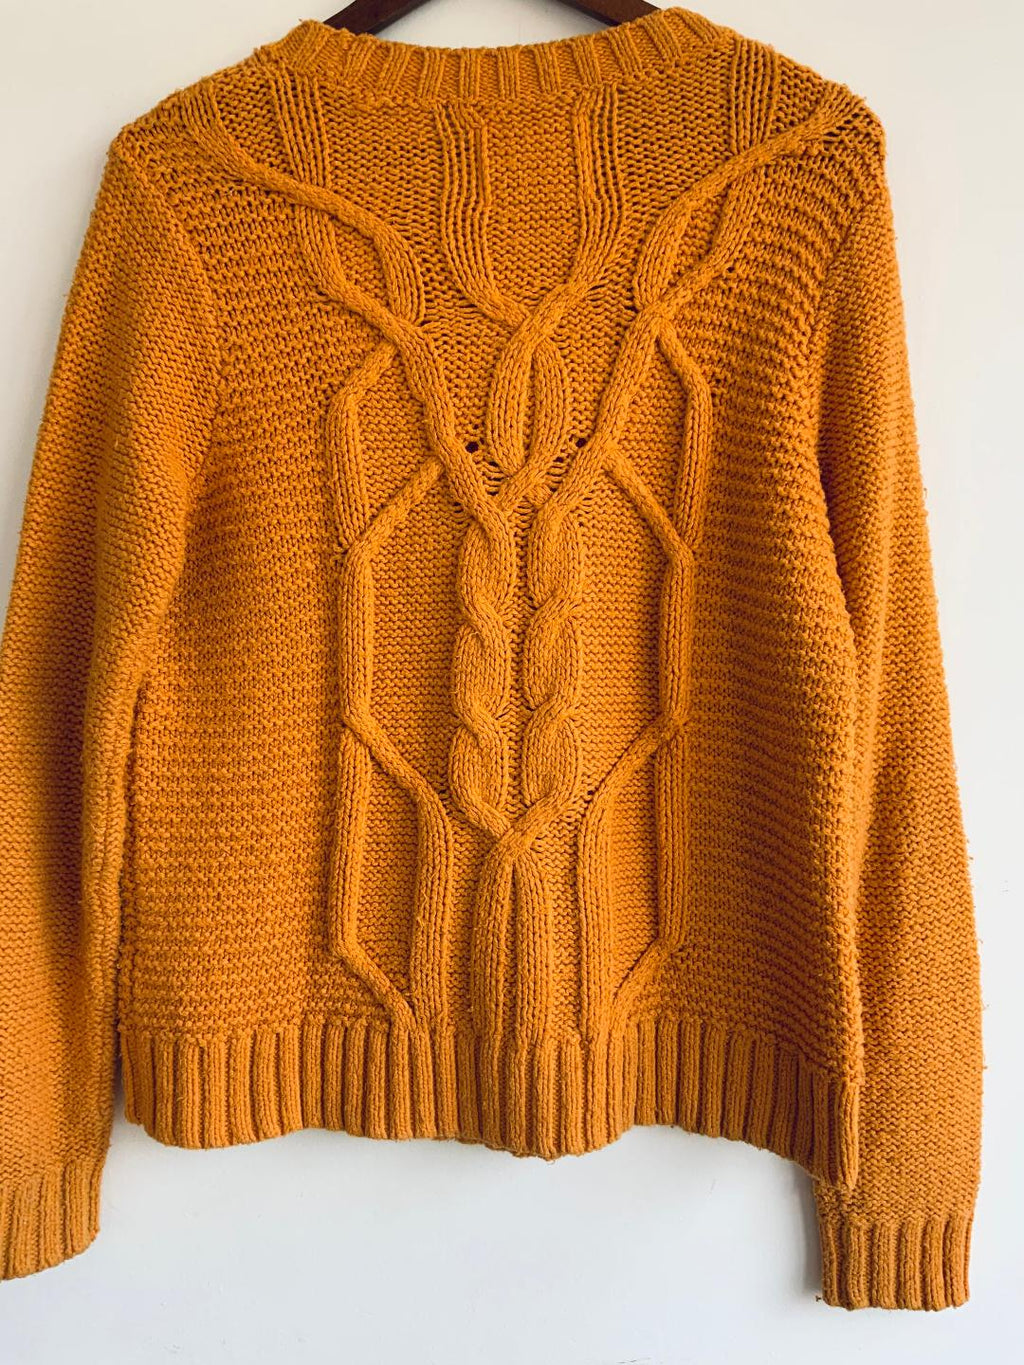 ABERCROMBIE & FITCH Sweater cuello redondo carrot. Talla M